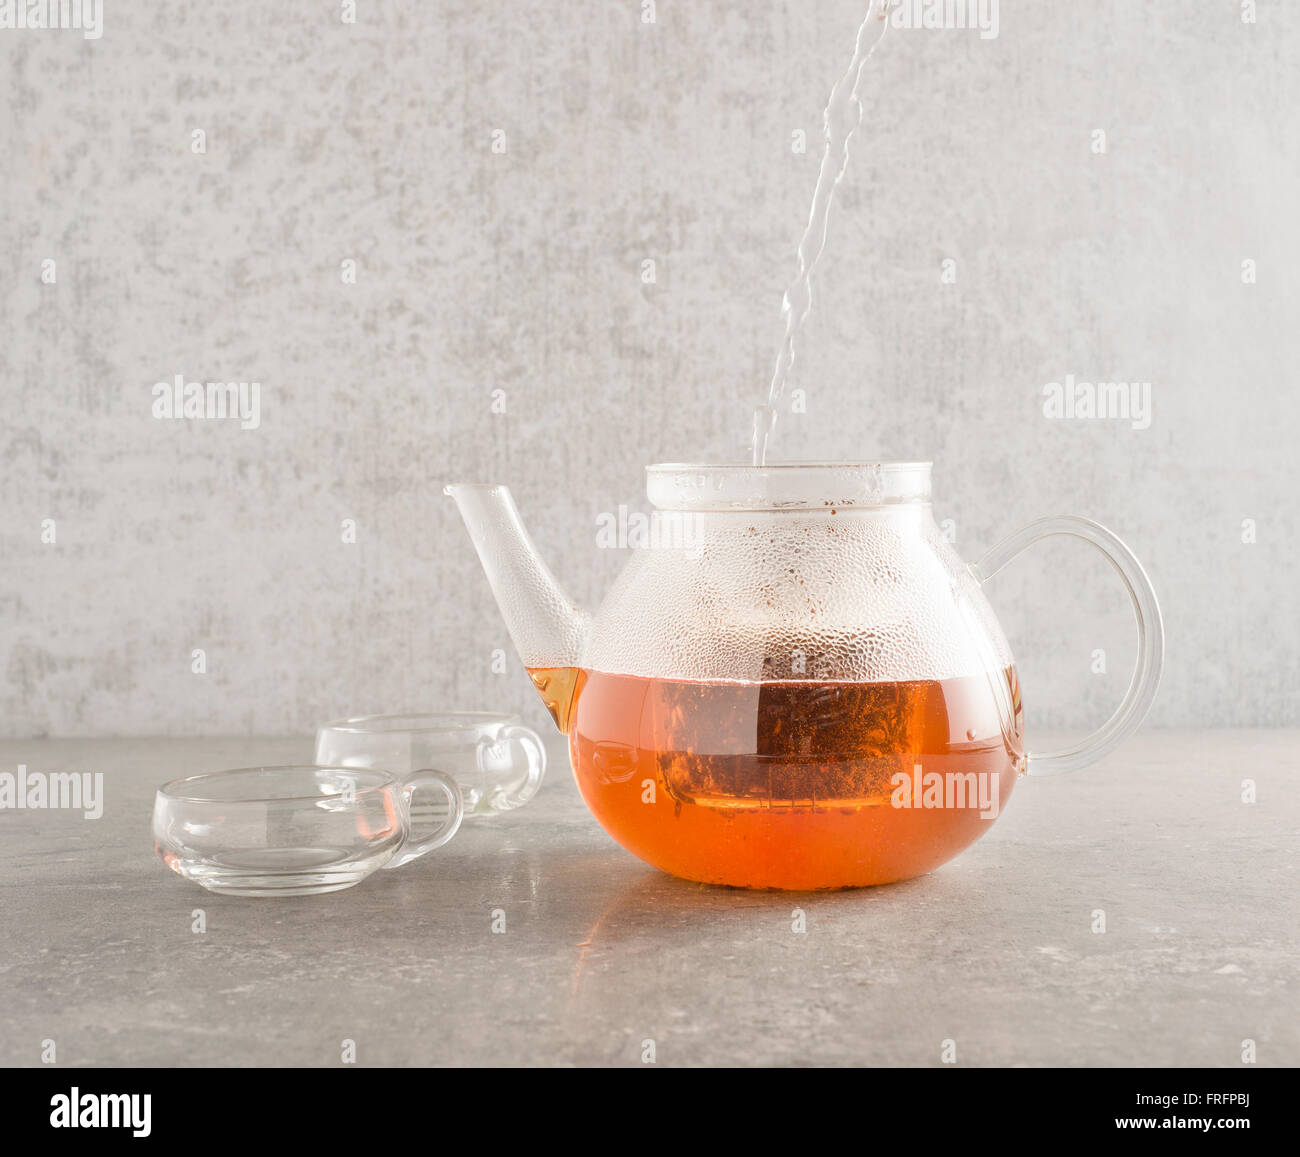 Heißes Wasser im Glas Teekanne gießen und Sichten Tee Blätter. Zwei Tassen aus Glas befinden sich auf der Seite auf einem Stein Küchentisch Stockfoto